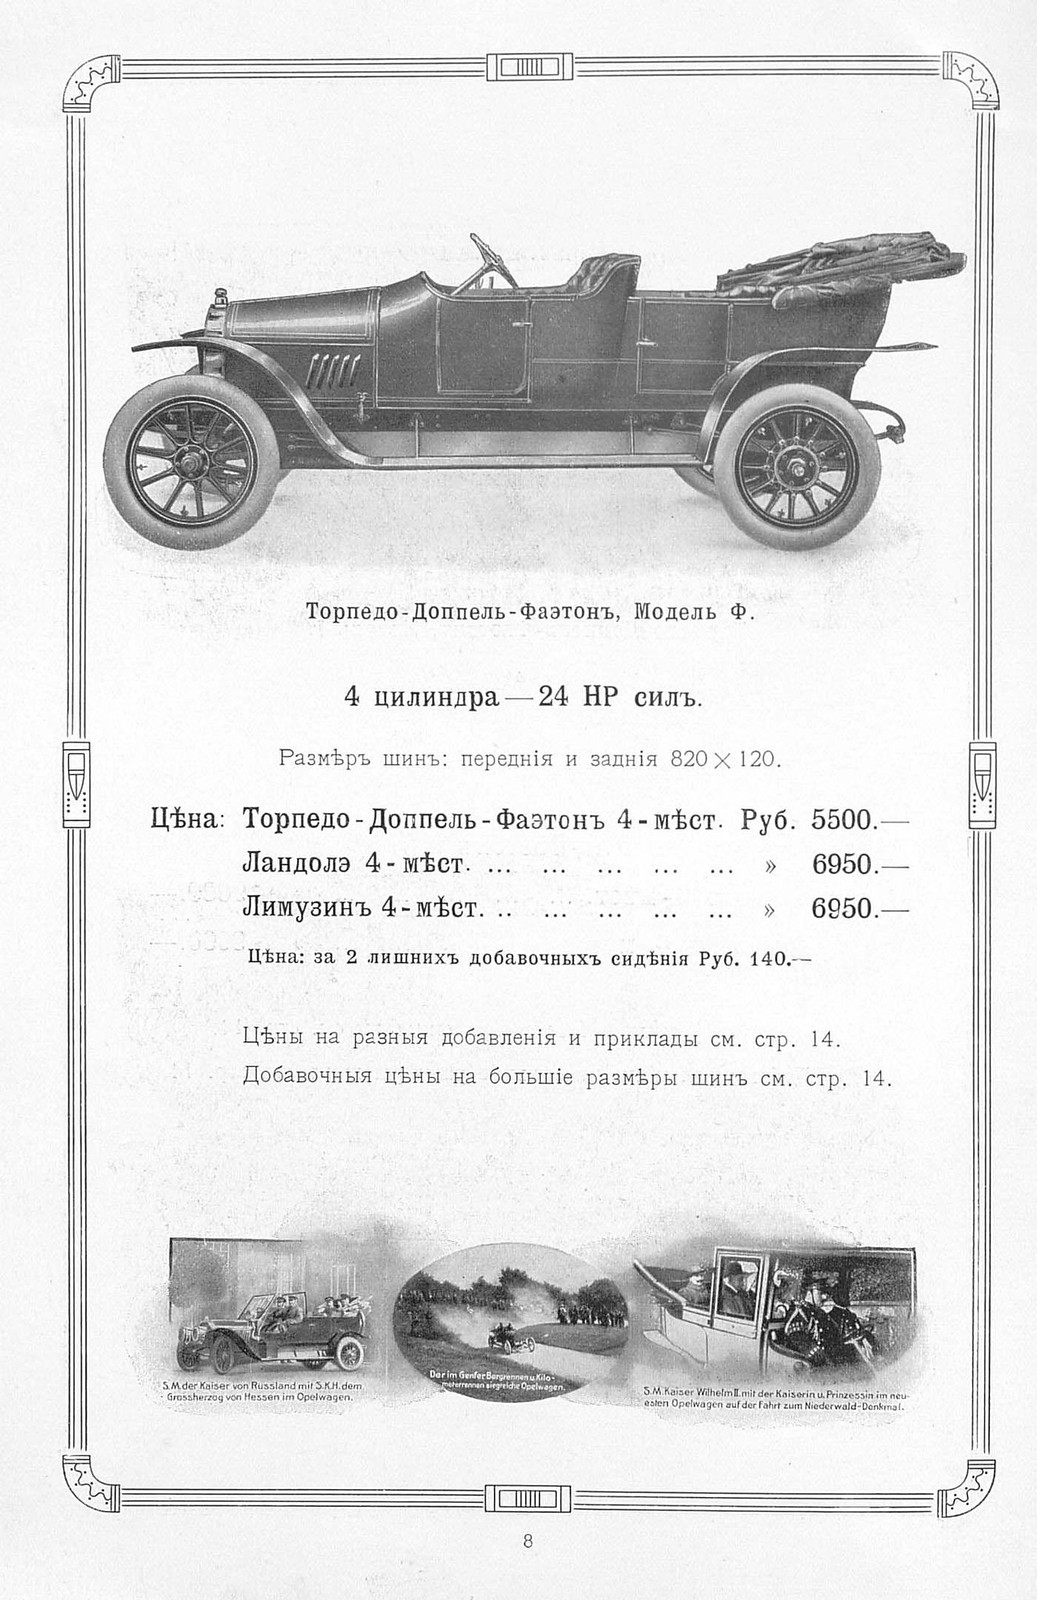 1911. Opel. Склад автомобилей и гараж в Москве Page_00009